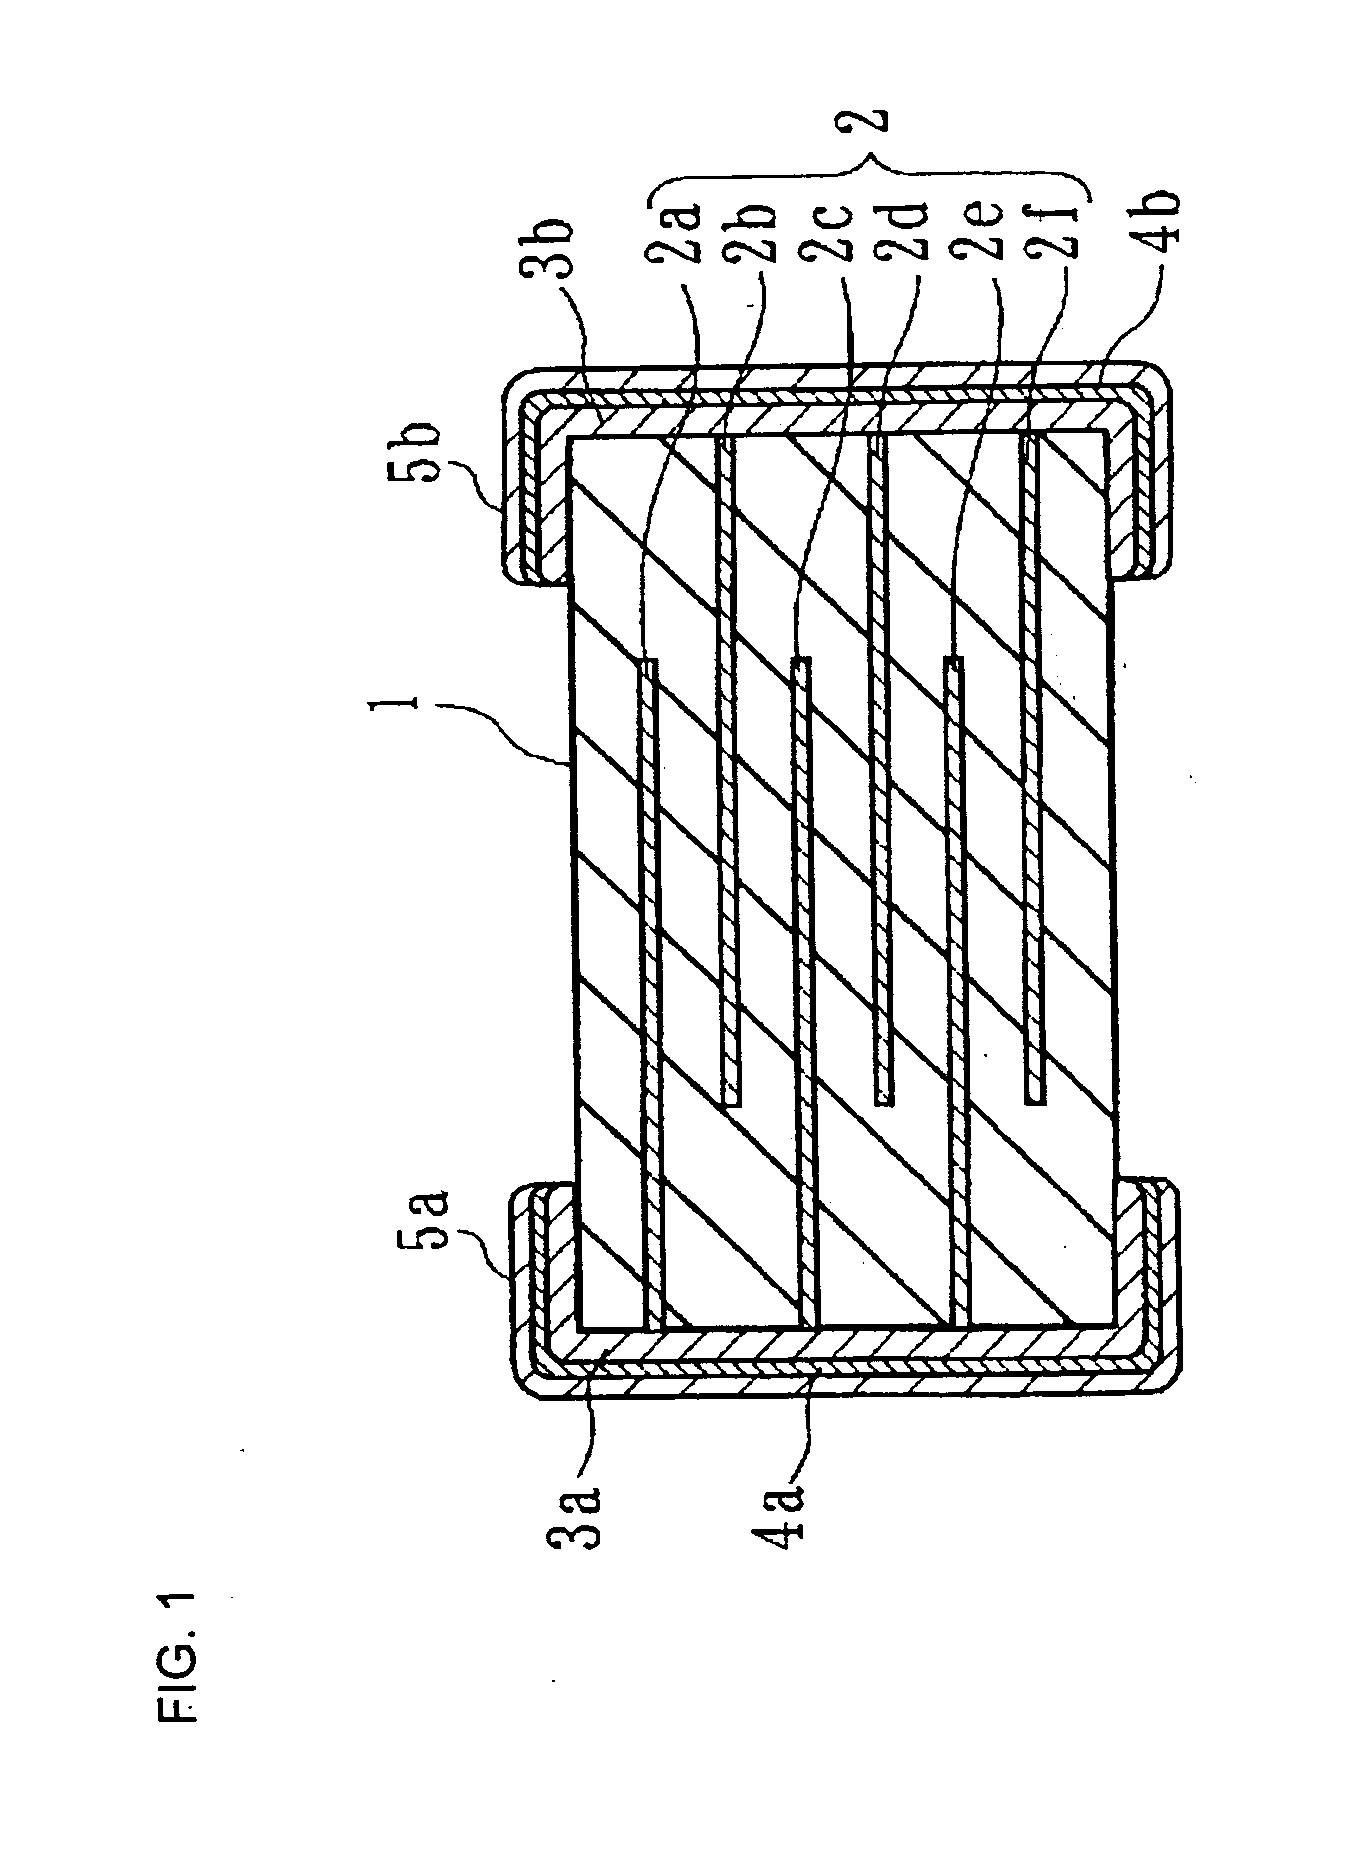 Dielectric ceramic and monolithic ceramic capacitor